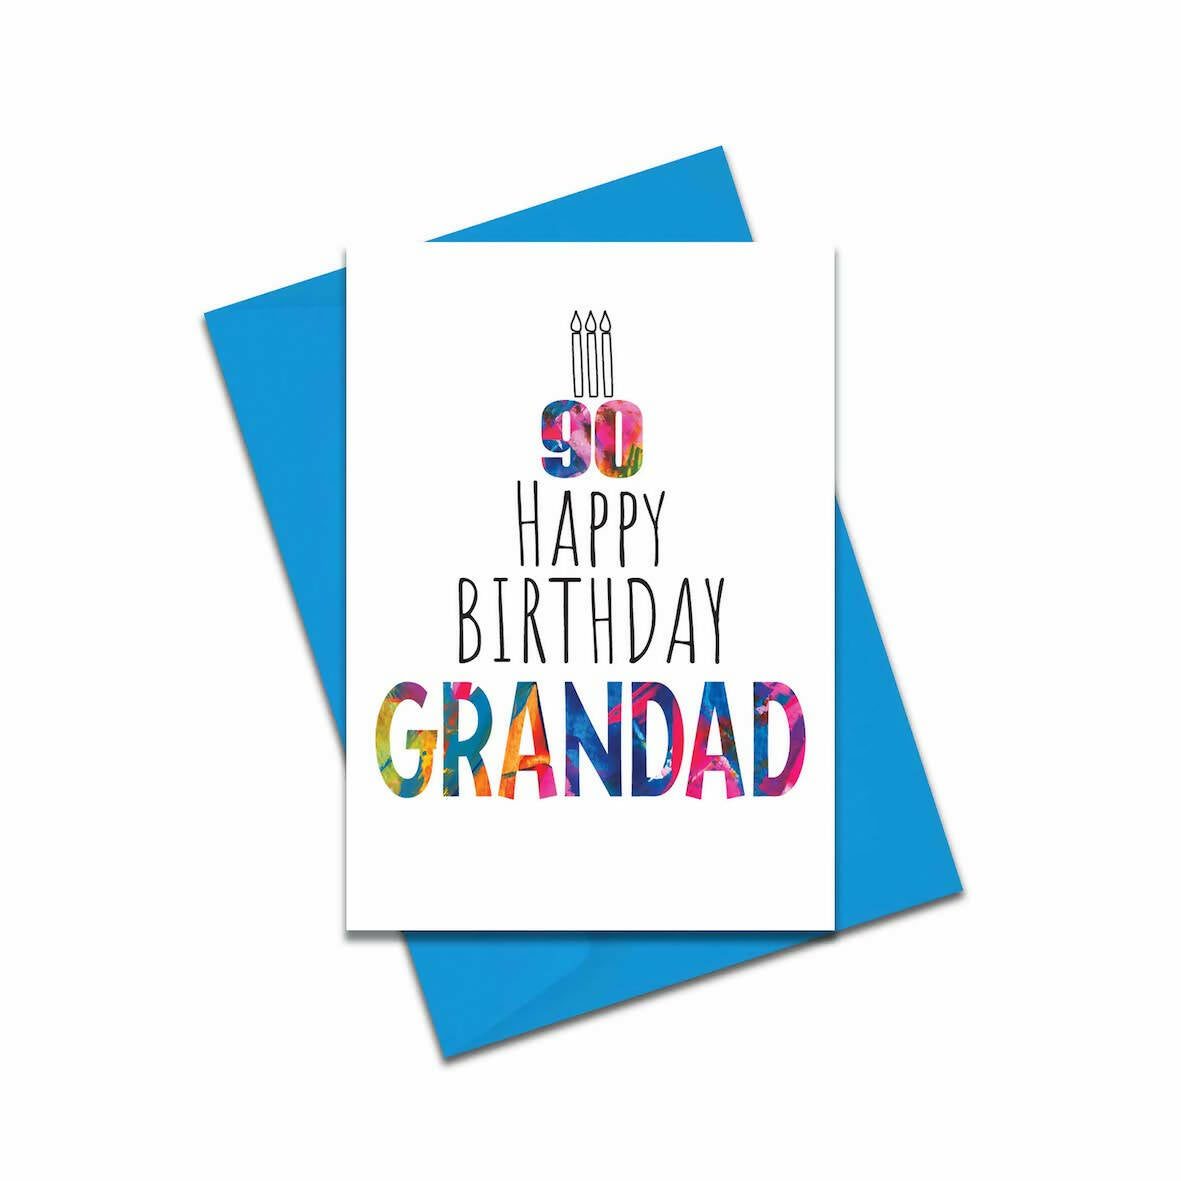 Grandad 90th Birthday Card - Modern and Colourful Birthday Card ...